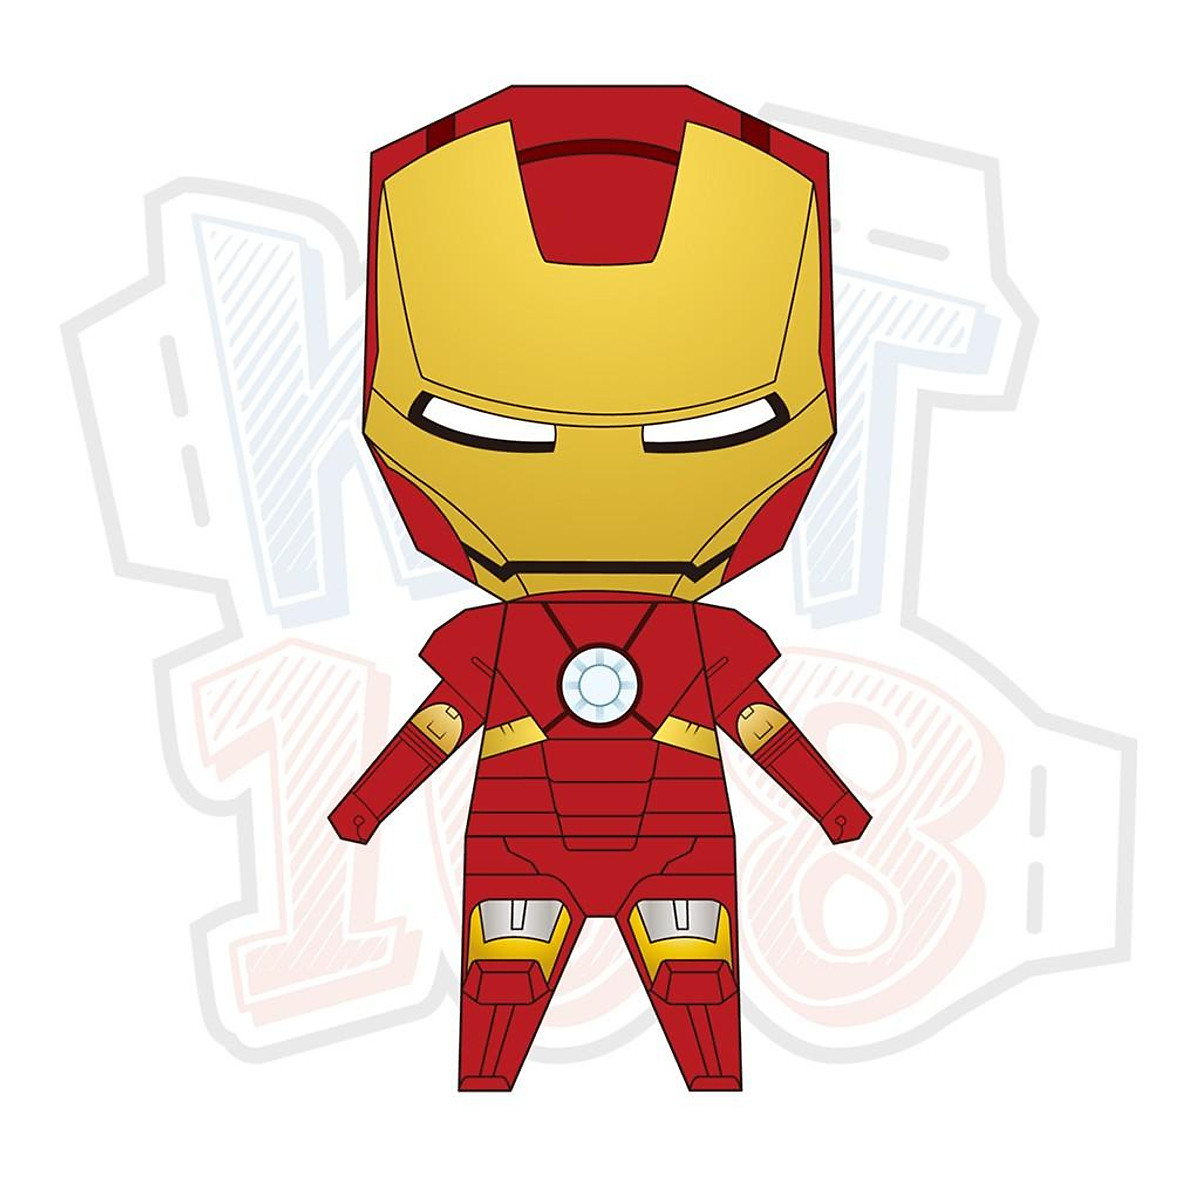 Mẫu giấy Iron Man chibi robot quá độc đáo và mới lạ. Với sự kết hợp tuyệt vời giữa phong cách chibi và người máy Iron Man, mẫu giấy này đã trở thành niềm đam mê và yêu thích của rất nhiều người. Hãy cùng xem hình ảnh để tìm hiểu cách tạo ra mẫu giấy Iron Man chibi robot đầy sáng tạo và độc đáo cho riêng mình!